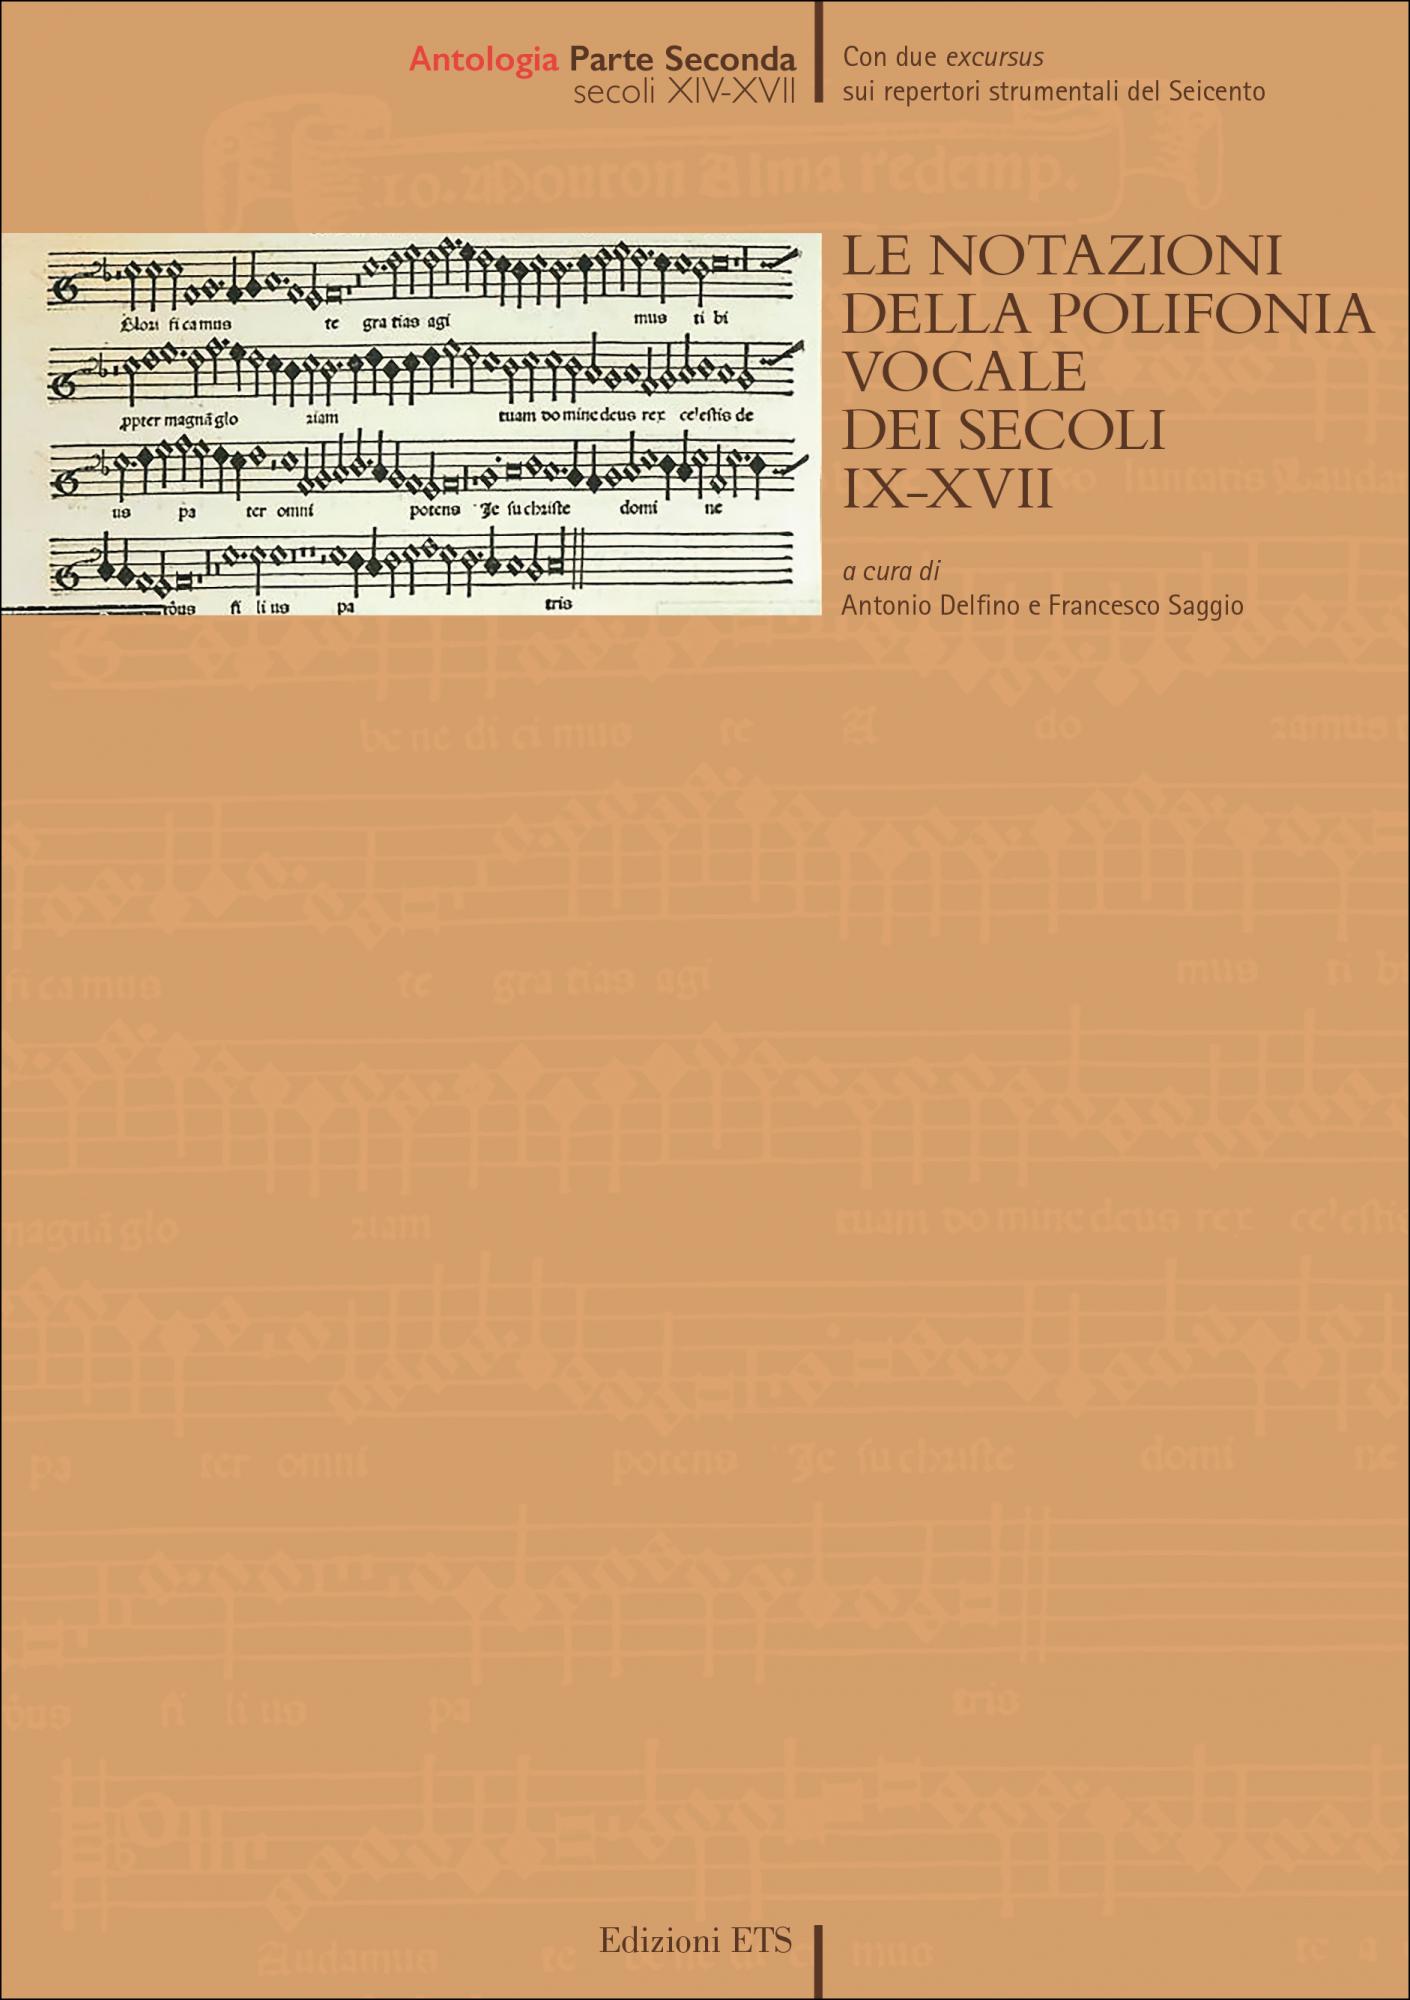 Le notazioni della polifonia vocale dei secoli IX-XVII.Antologia - Parte seconda Secoli XIV-XVII